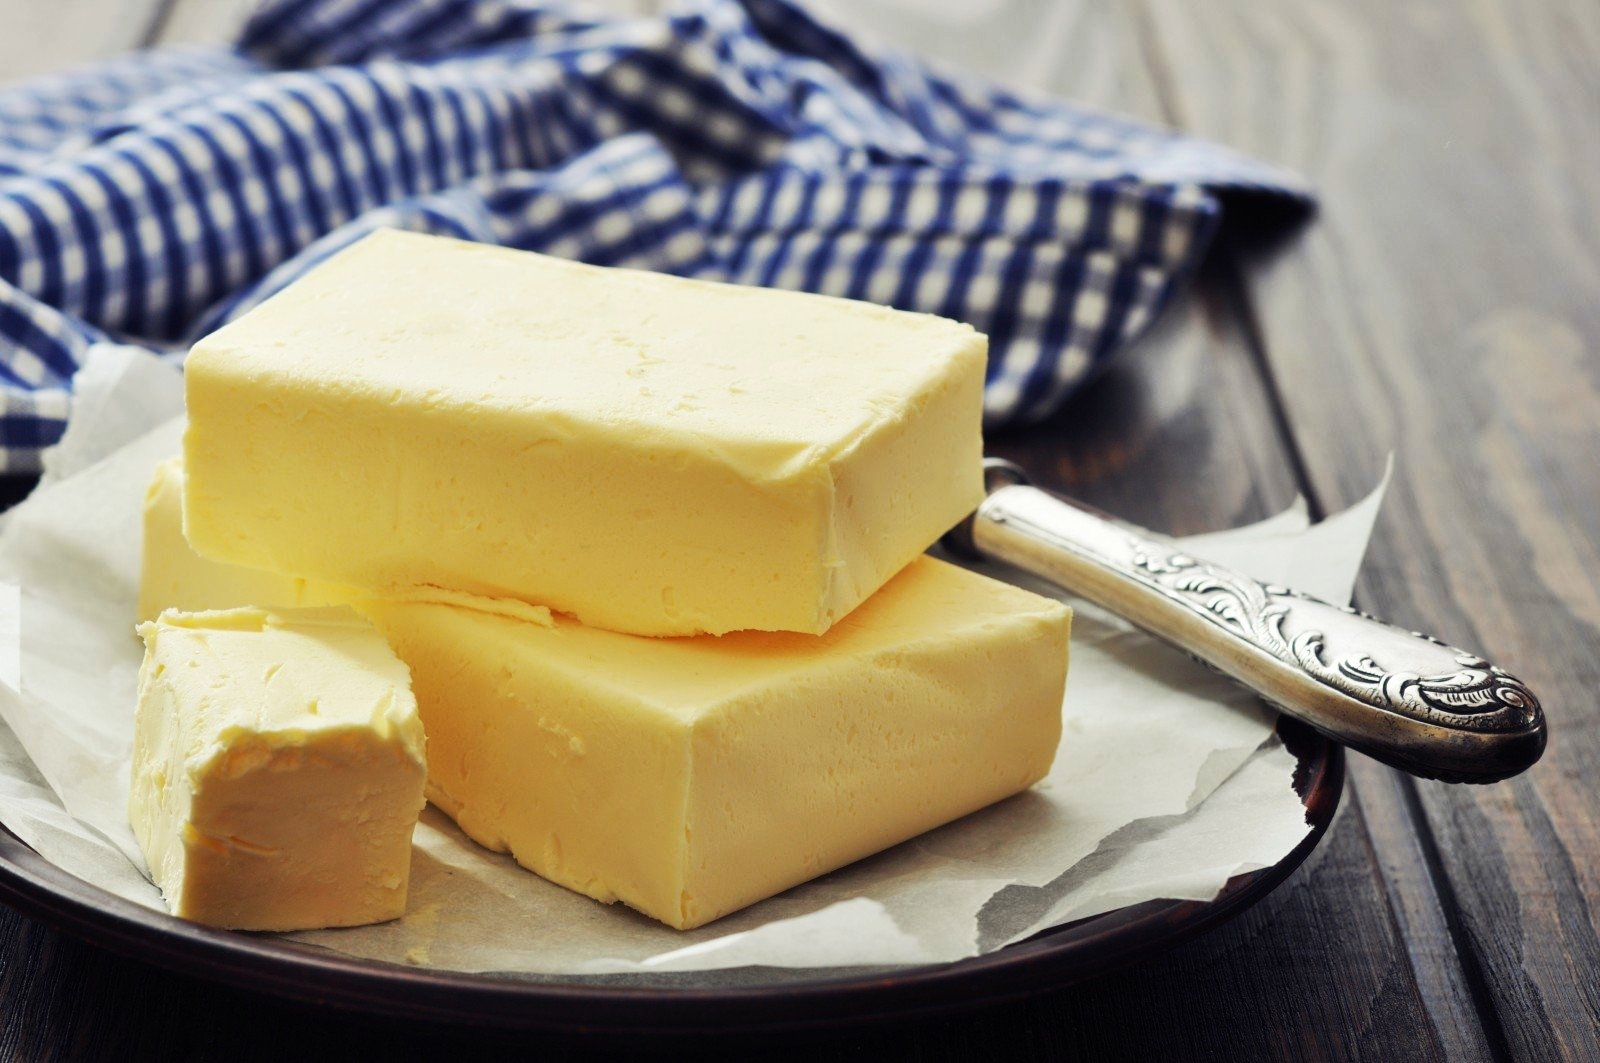 kak mozhno ispolzovat slivochnoe maslo v kulinarii v bytu v kosmeticheskih celyah i v narodnoj medicine 4